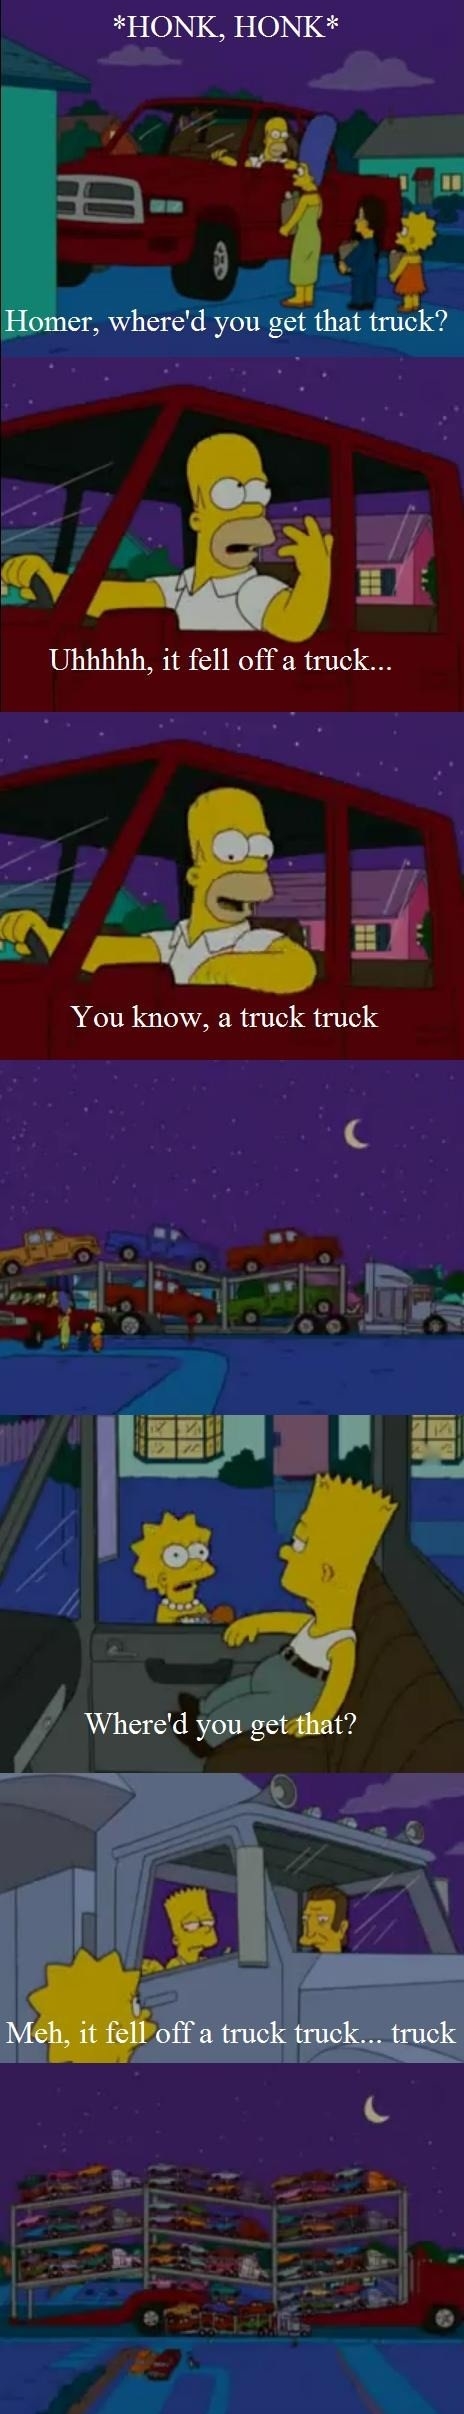 Truckception